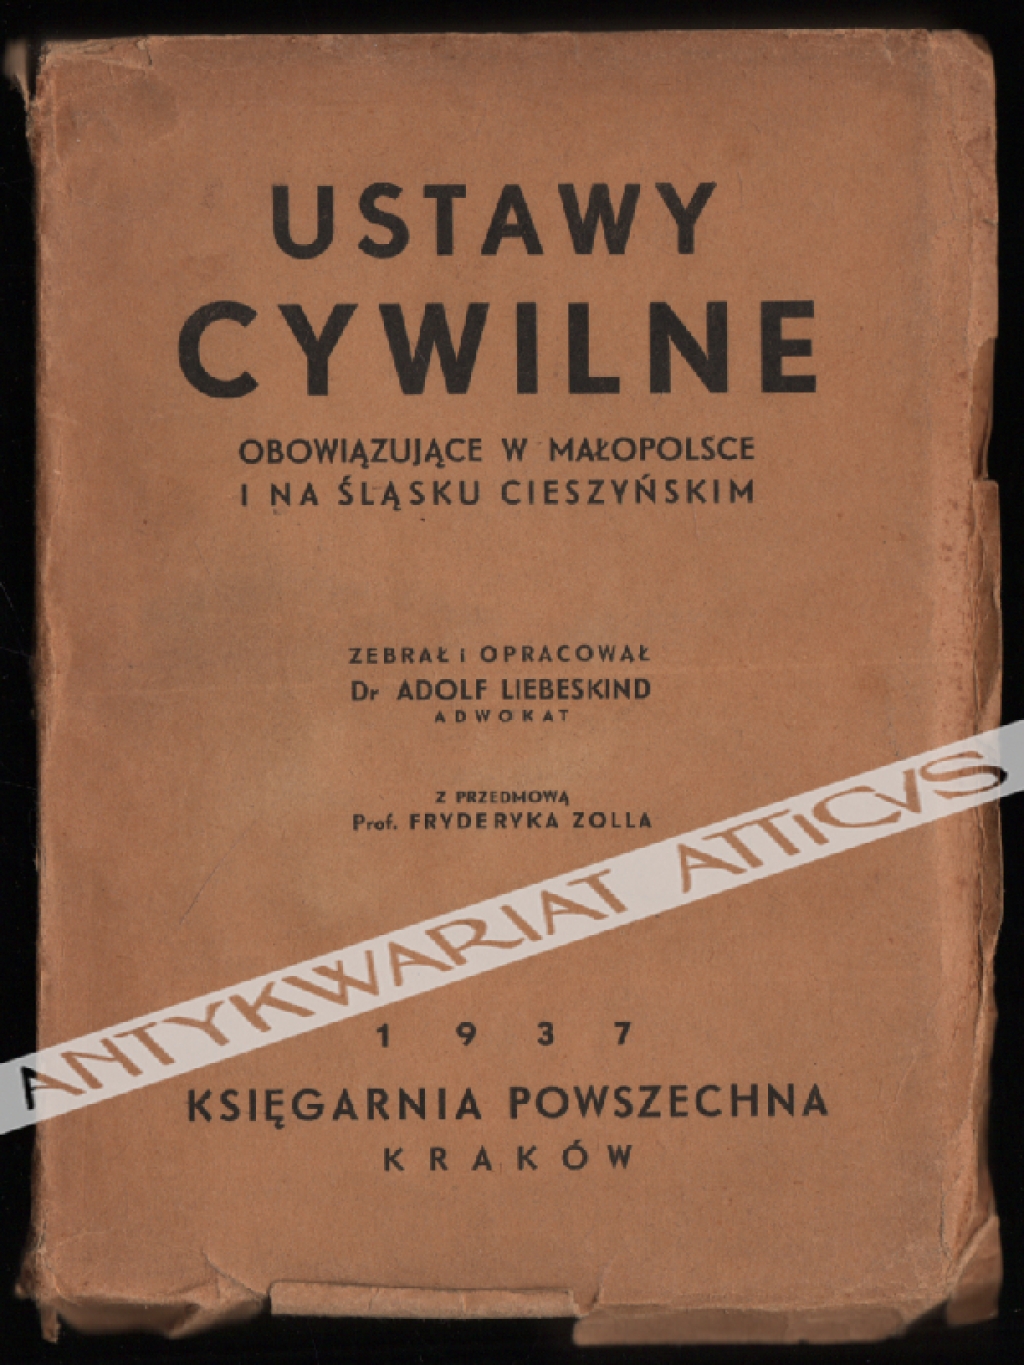 Ustawy cywilne obowiązujące w Małopolsce i na Śląsku Cieszyńskim: kodeks cywilny austriacki, kodeks zobowiązań, prawo ksiąg gruntowych, ustawy związkowe